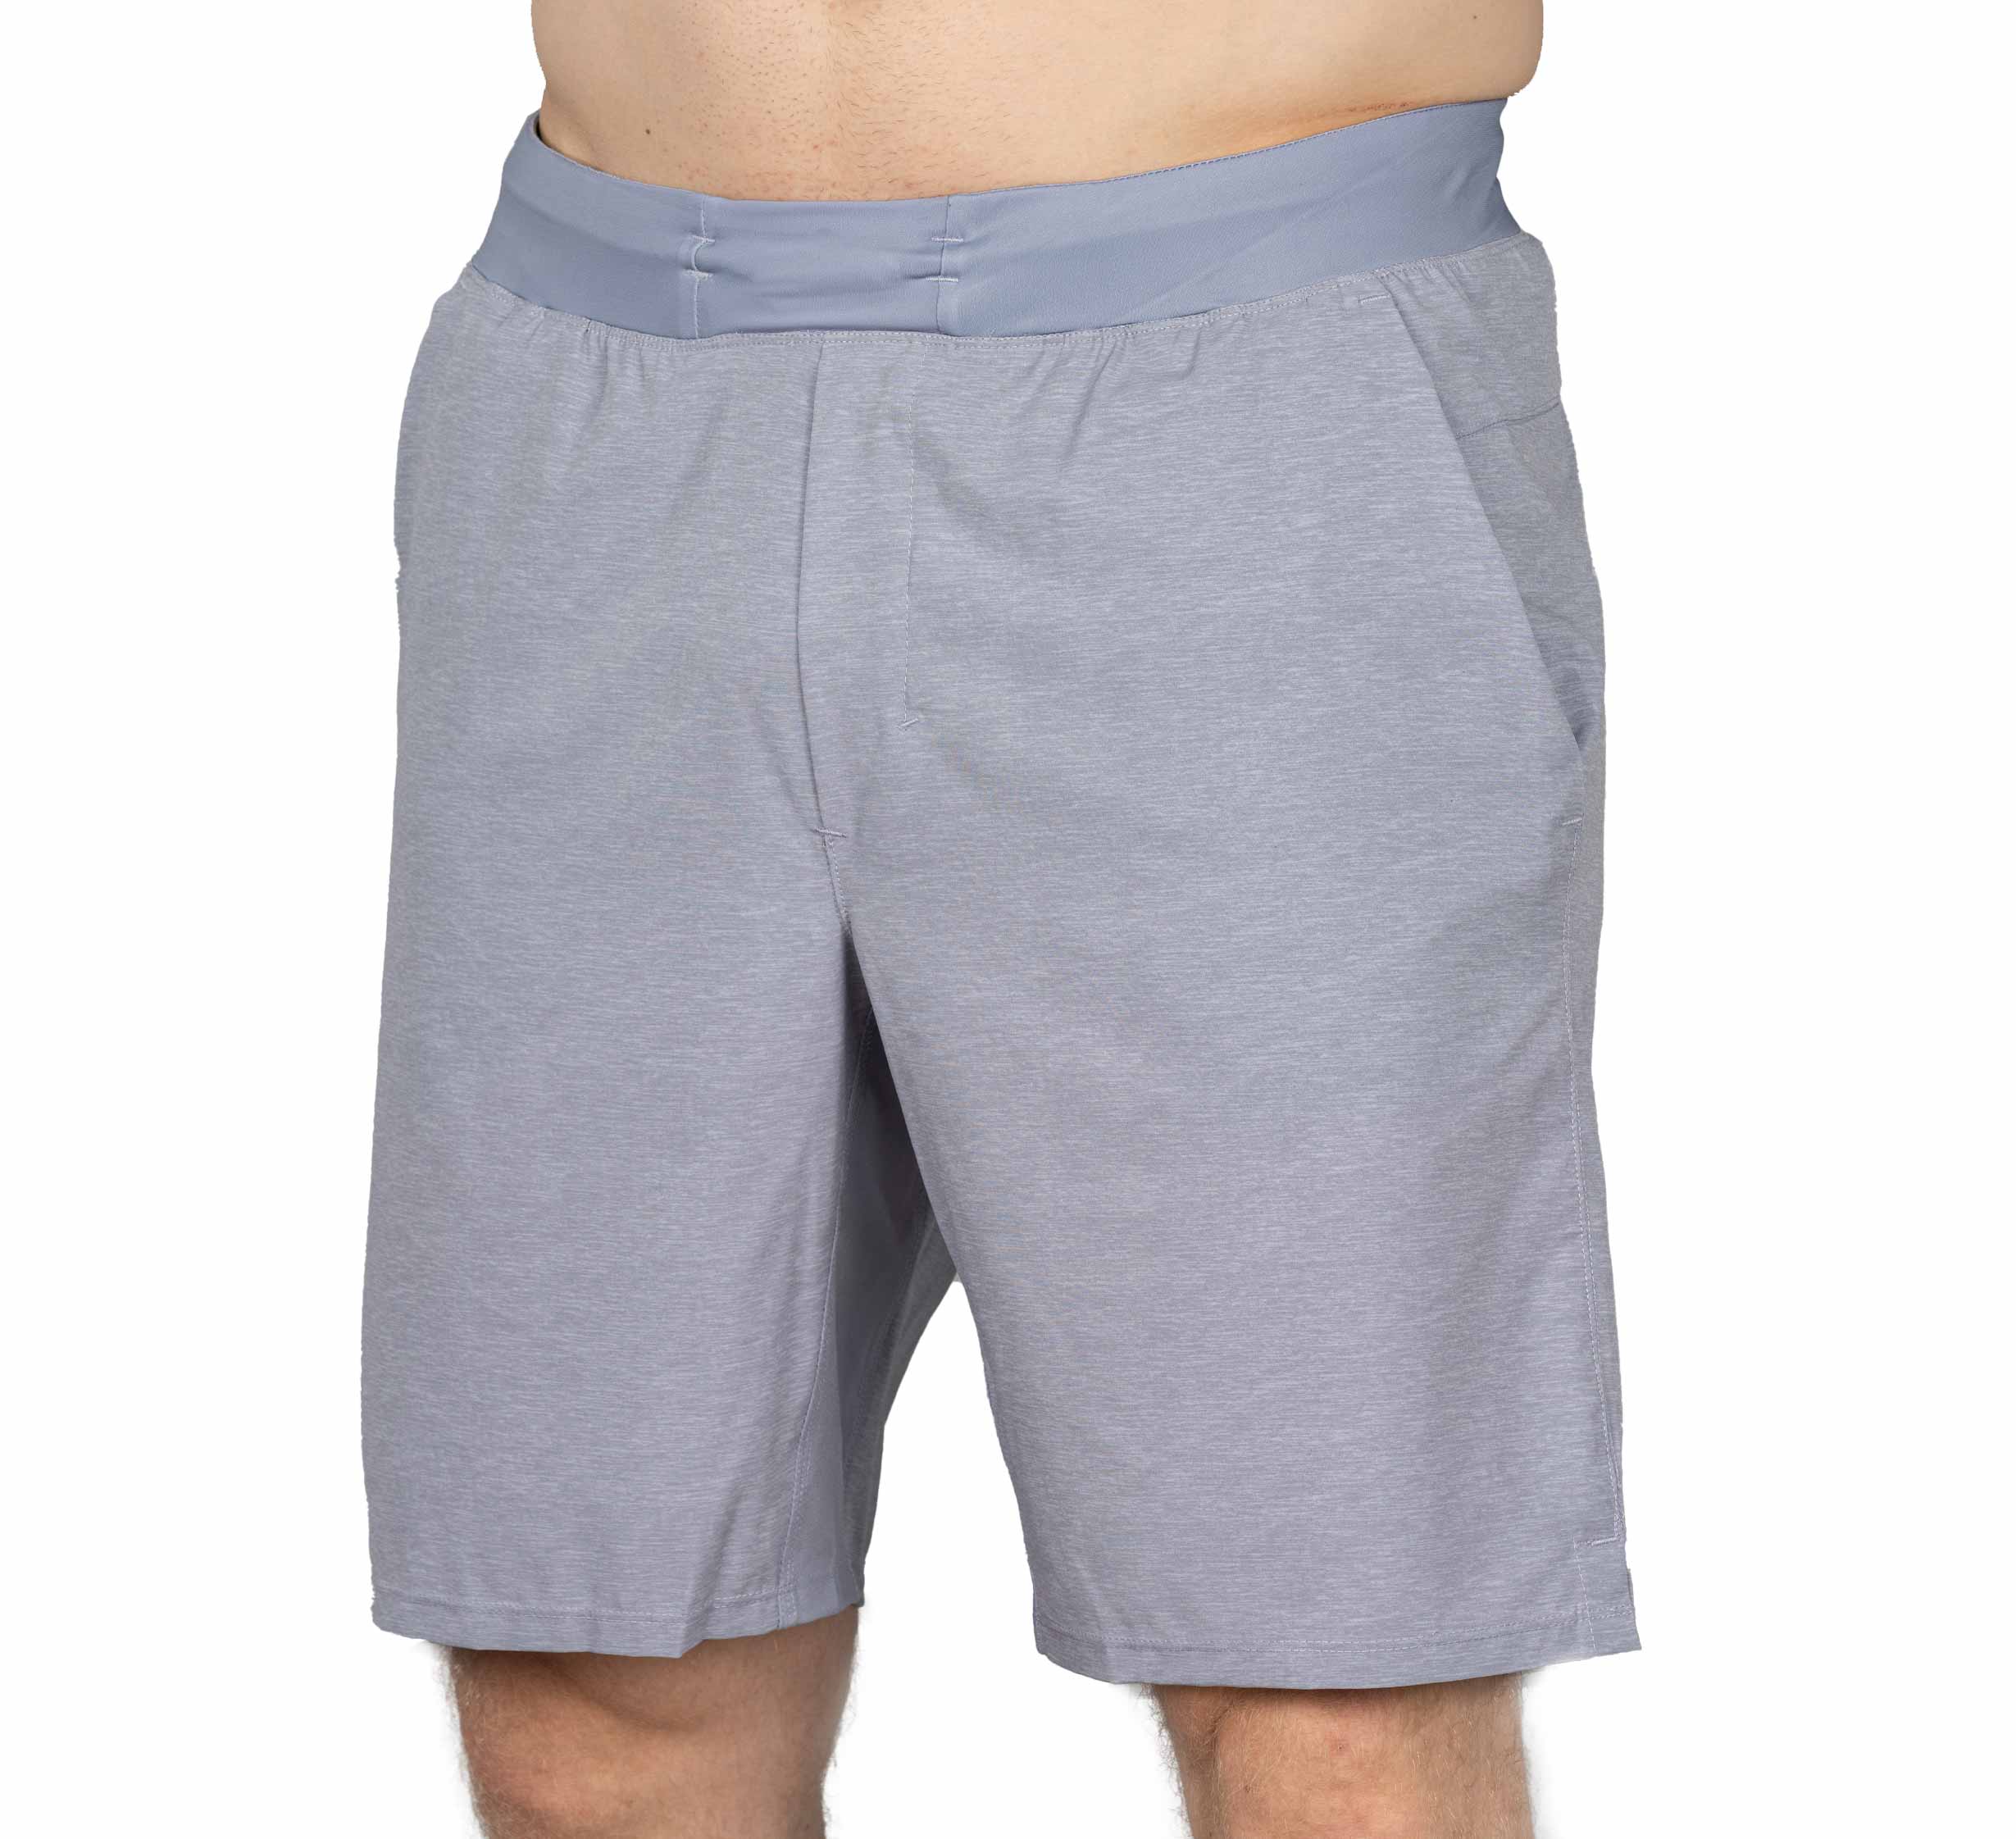 Lifestyle Shorts Grey